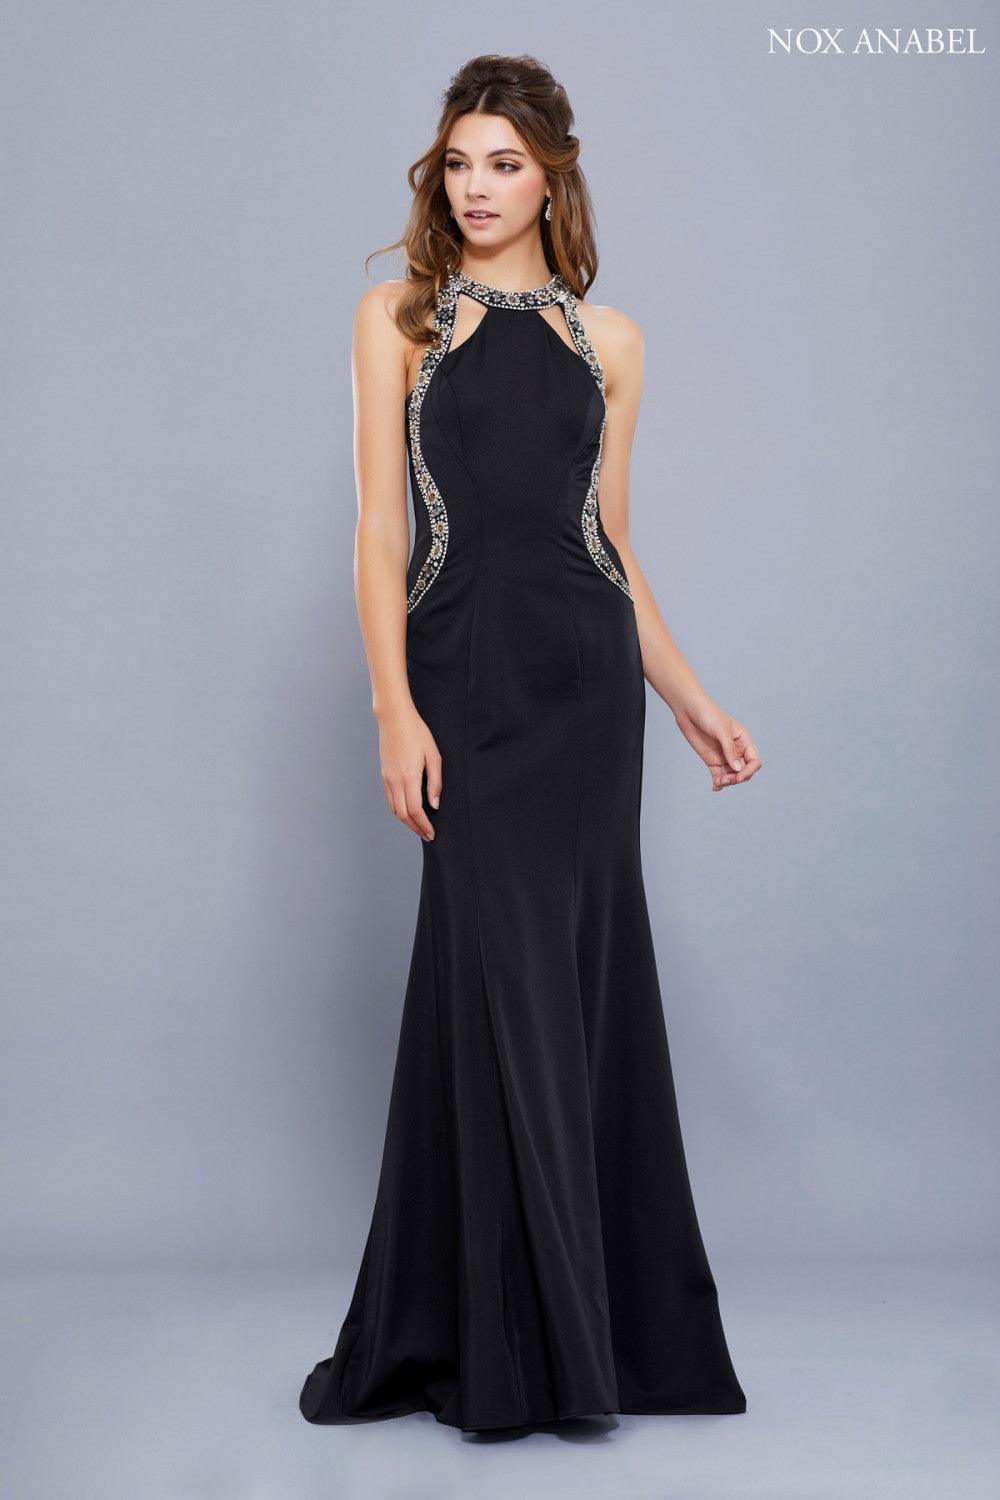 Long Halter Neck Embellished Formal Evening Dress - The Dress Outlet Nox Anabel